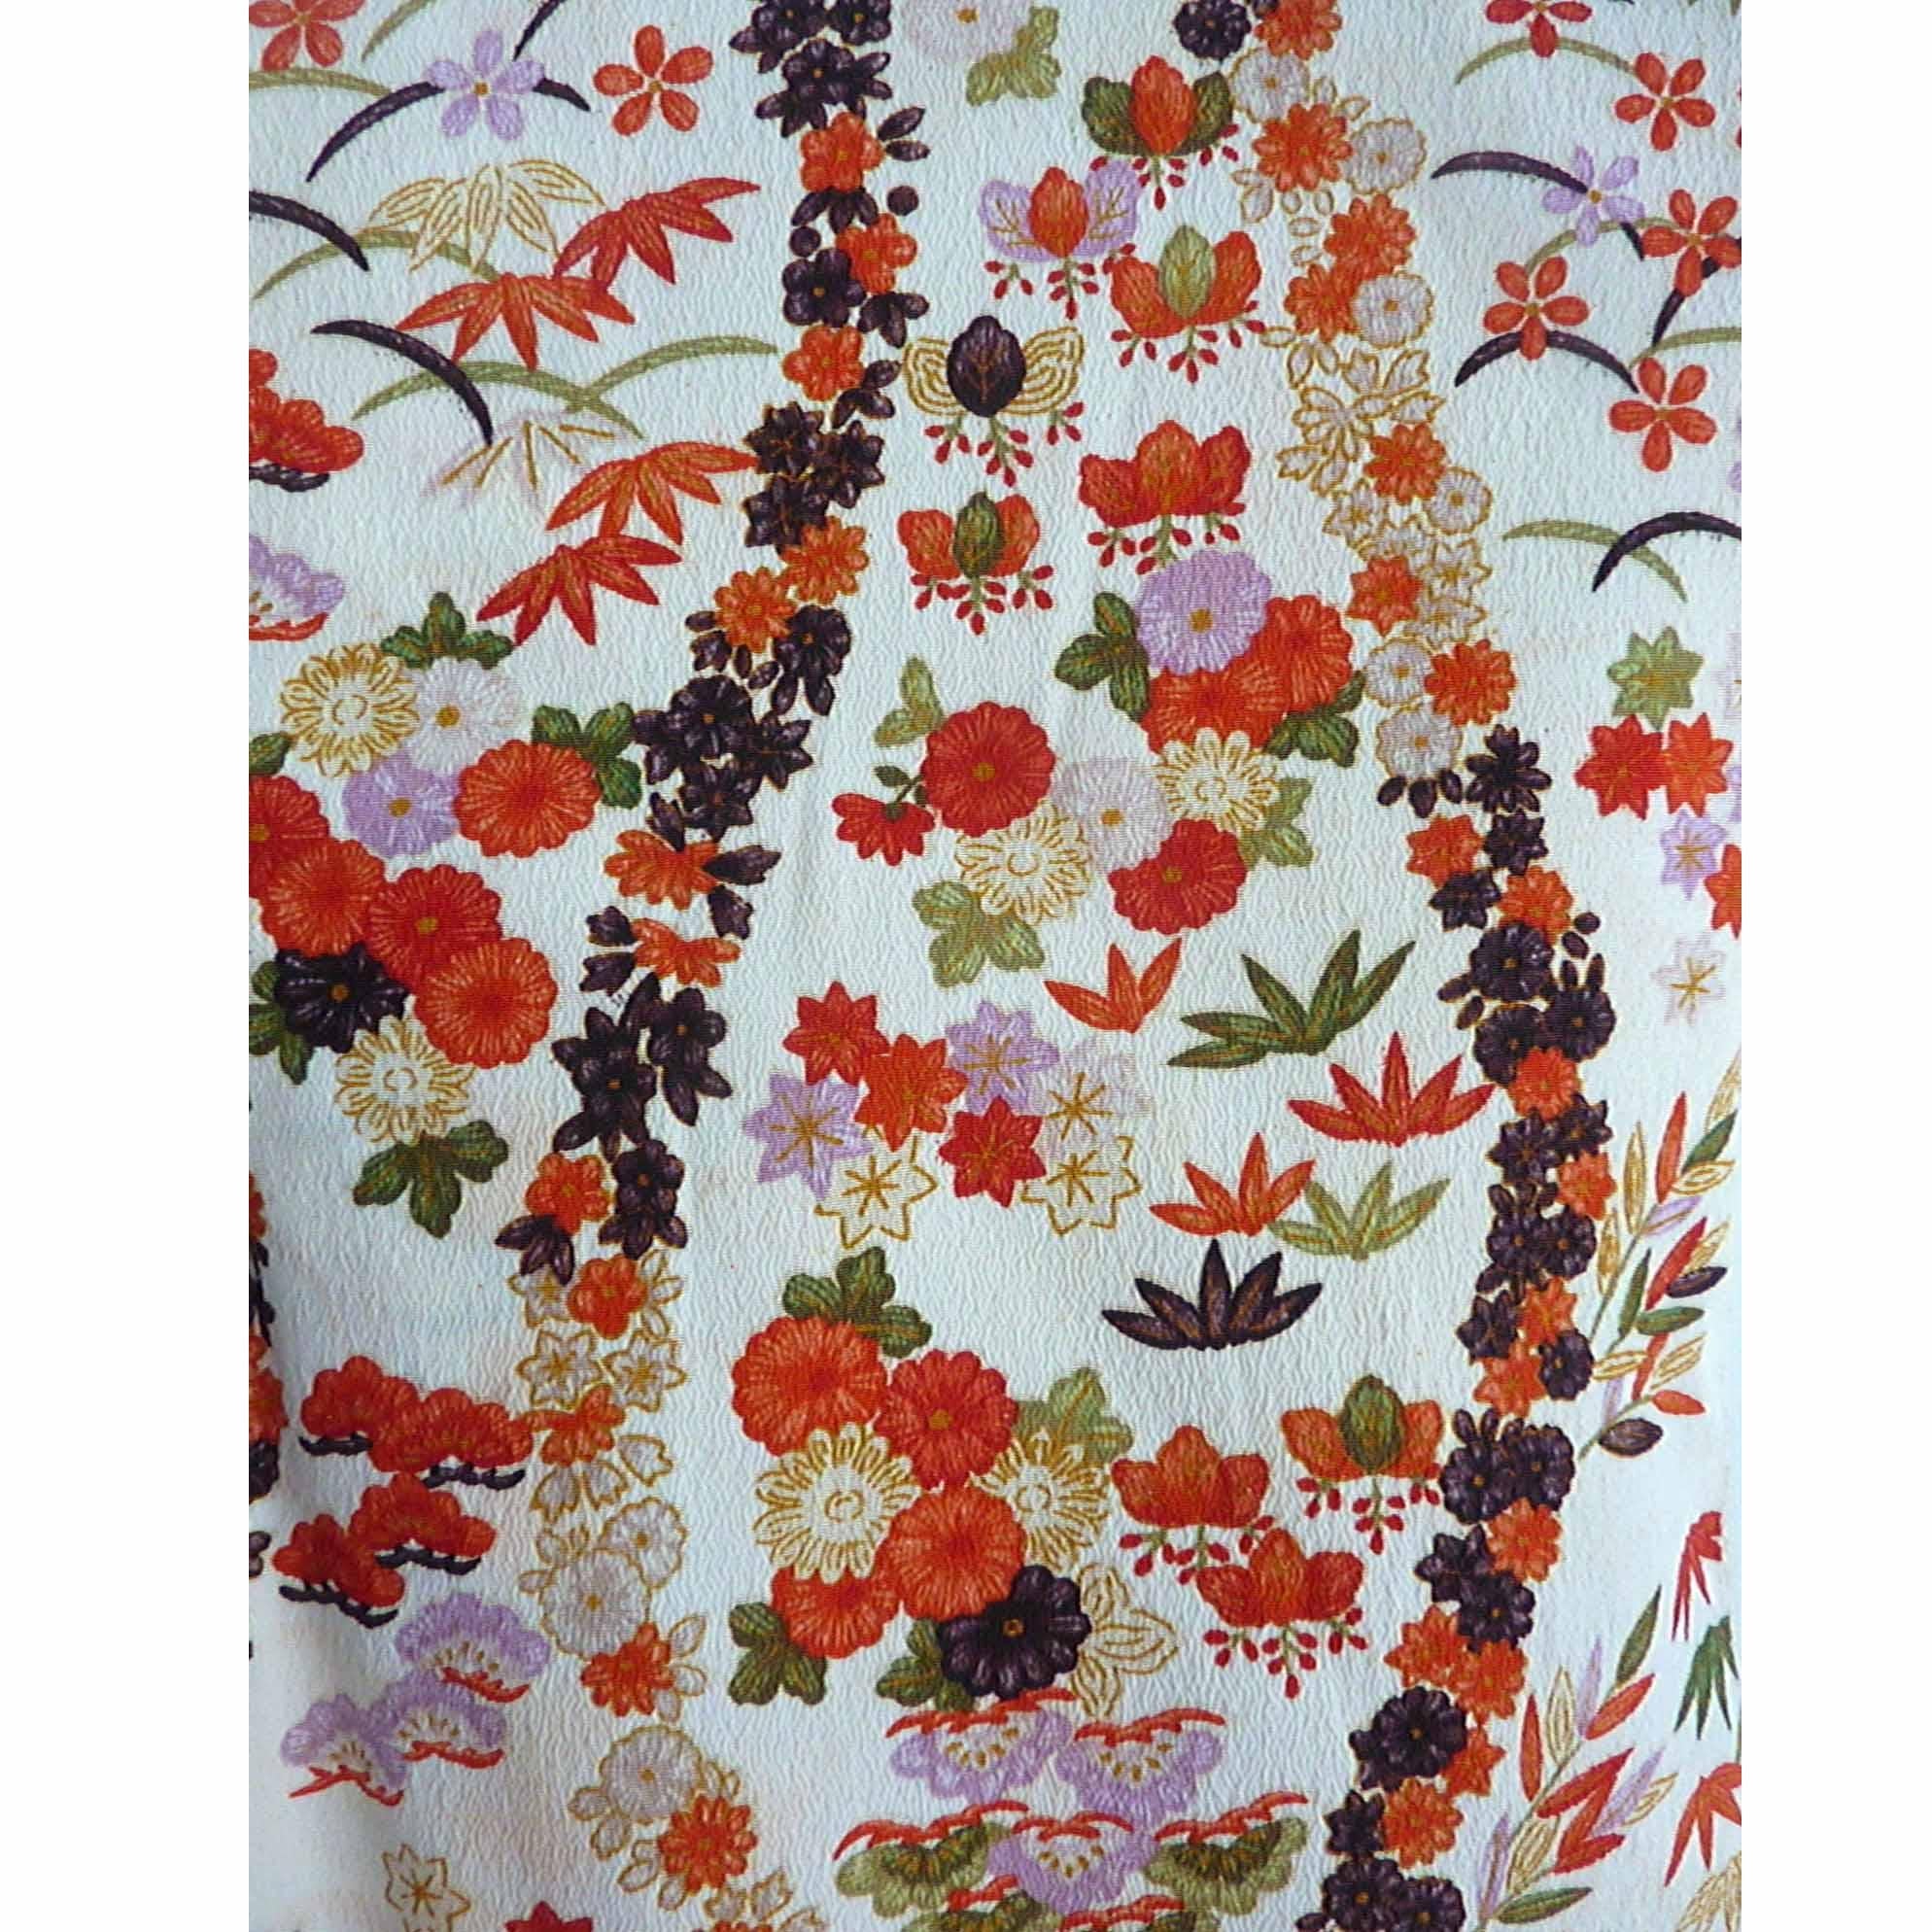 Ungefähr: 1920-1930
Herkunftsort: Japan
Material: Seide
Zustand: Sehr gut
Ecru Farbe wichtig alle Seide Kimono ist handgenäht und in Japan hergestellt. 
Die Verzierung besteht aus romantischen Kirsch- und Pflaumenblüten mit goldenen Akzenten.